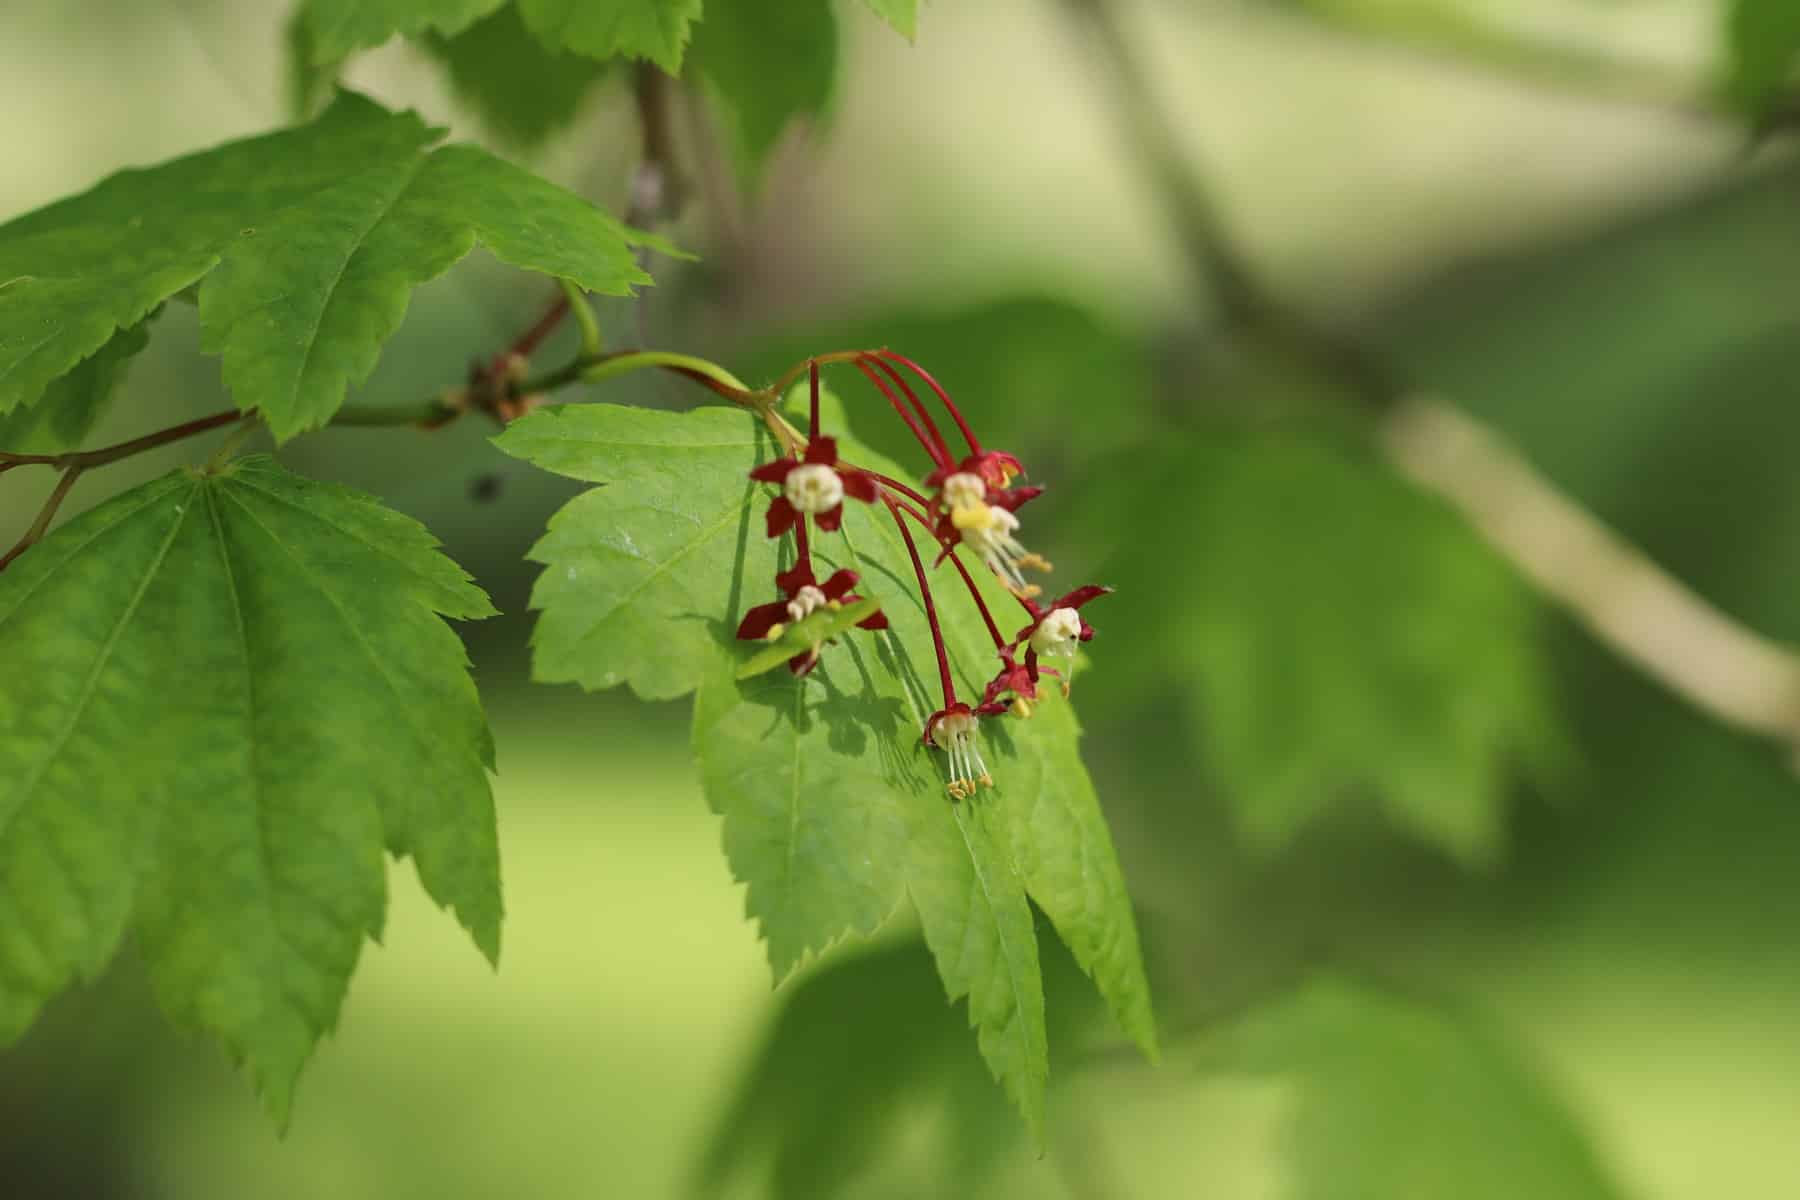 Weinblatt-Ahorn (Acer circinatum)